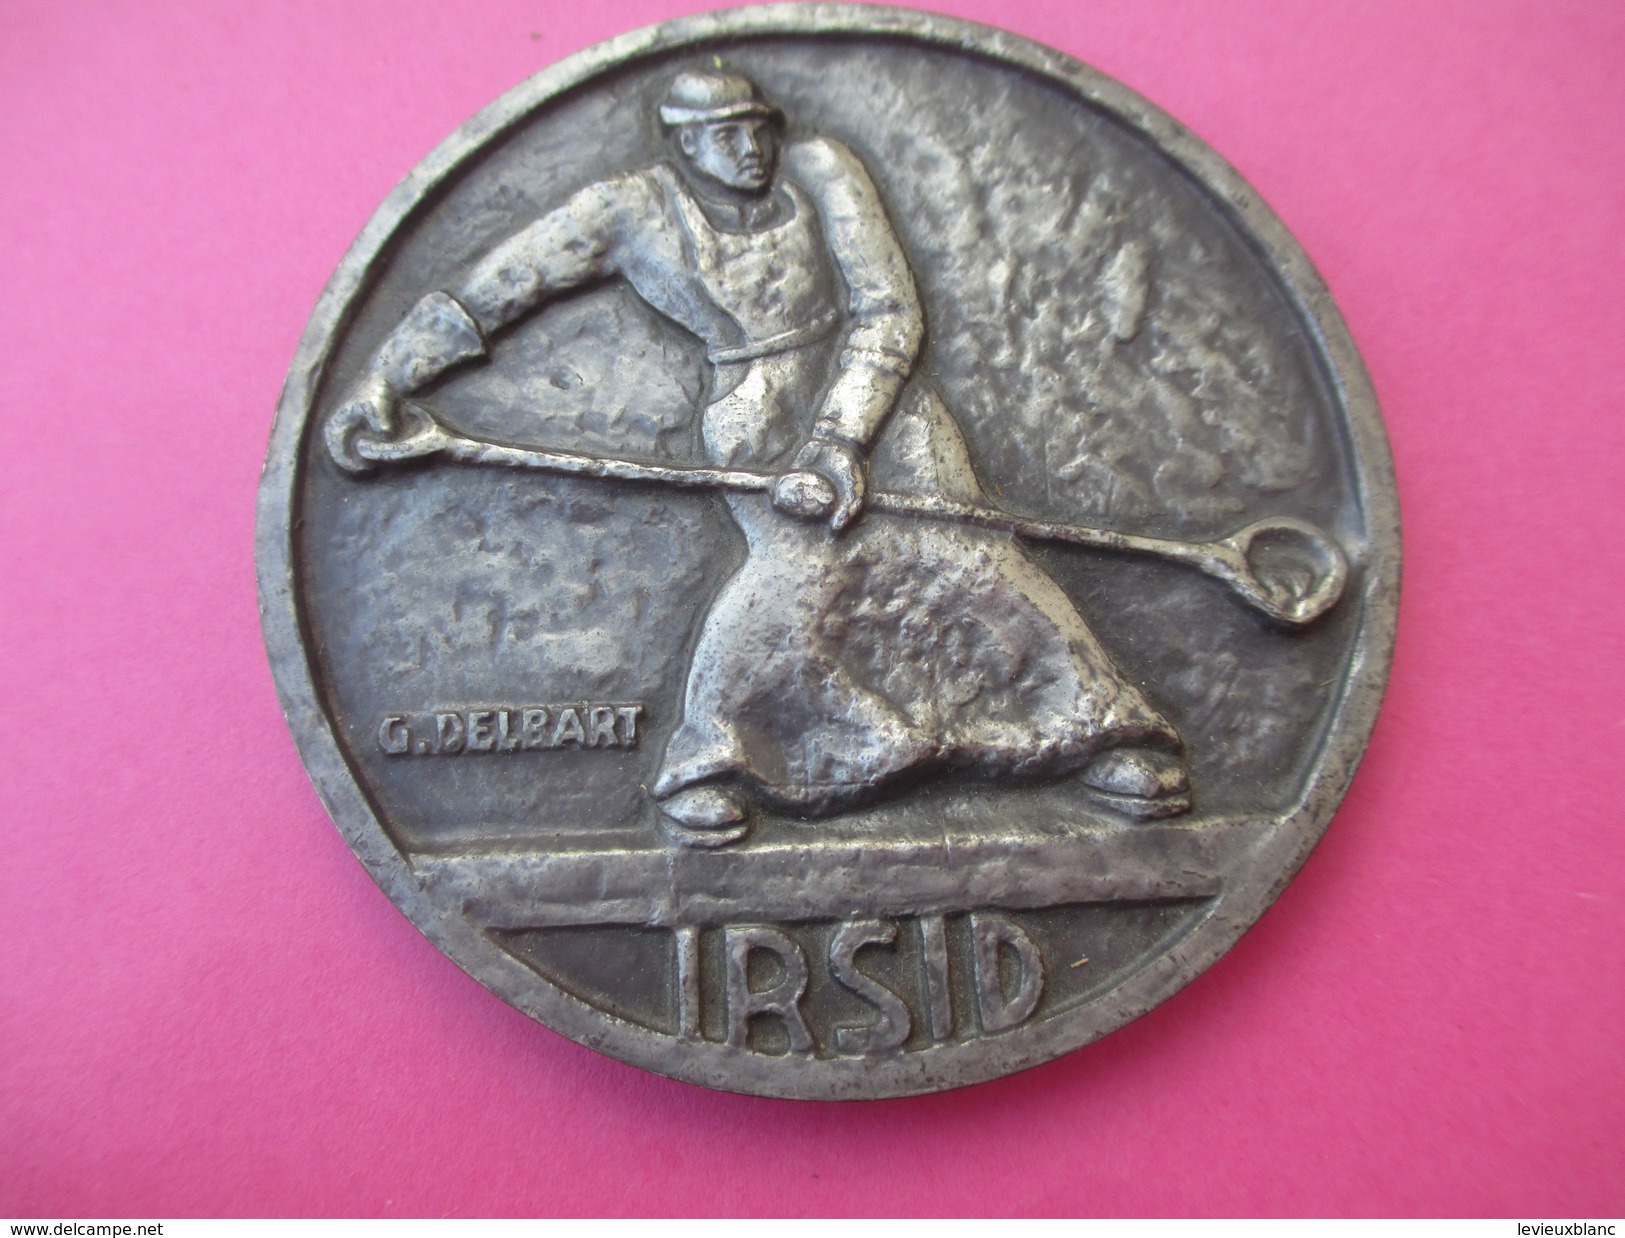 3 Médailles Ancienneté/IRSID/Institut de Recherche de la Sidérurgie/Bronze-Argent-Or/attribuées/1972-77-82        MED148